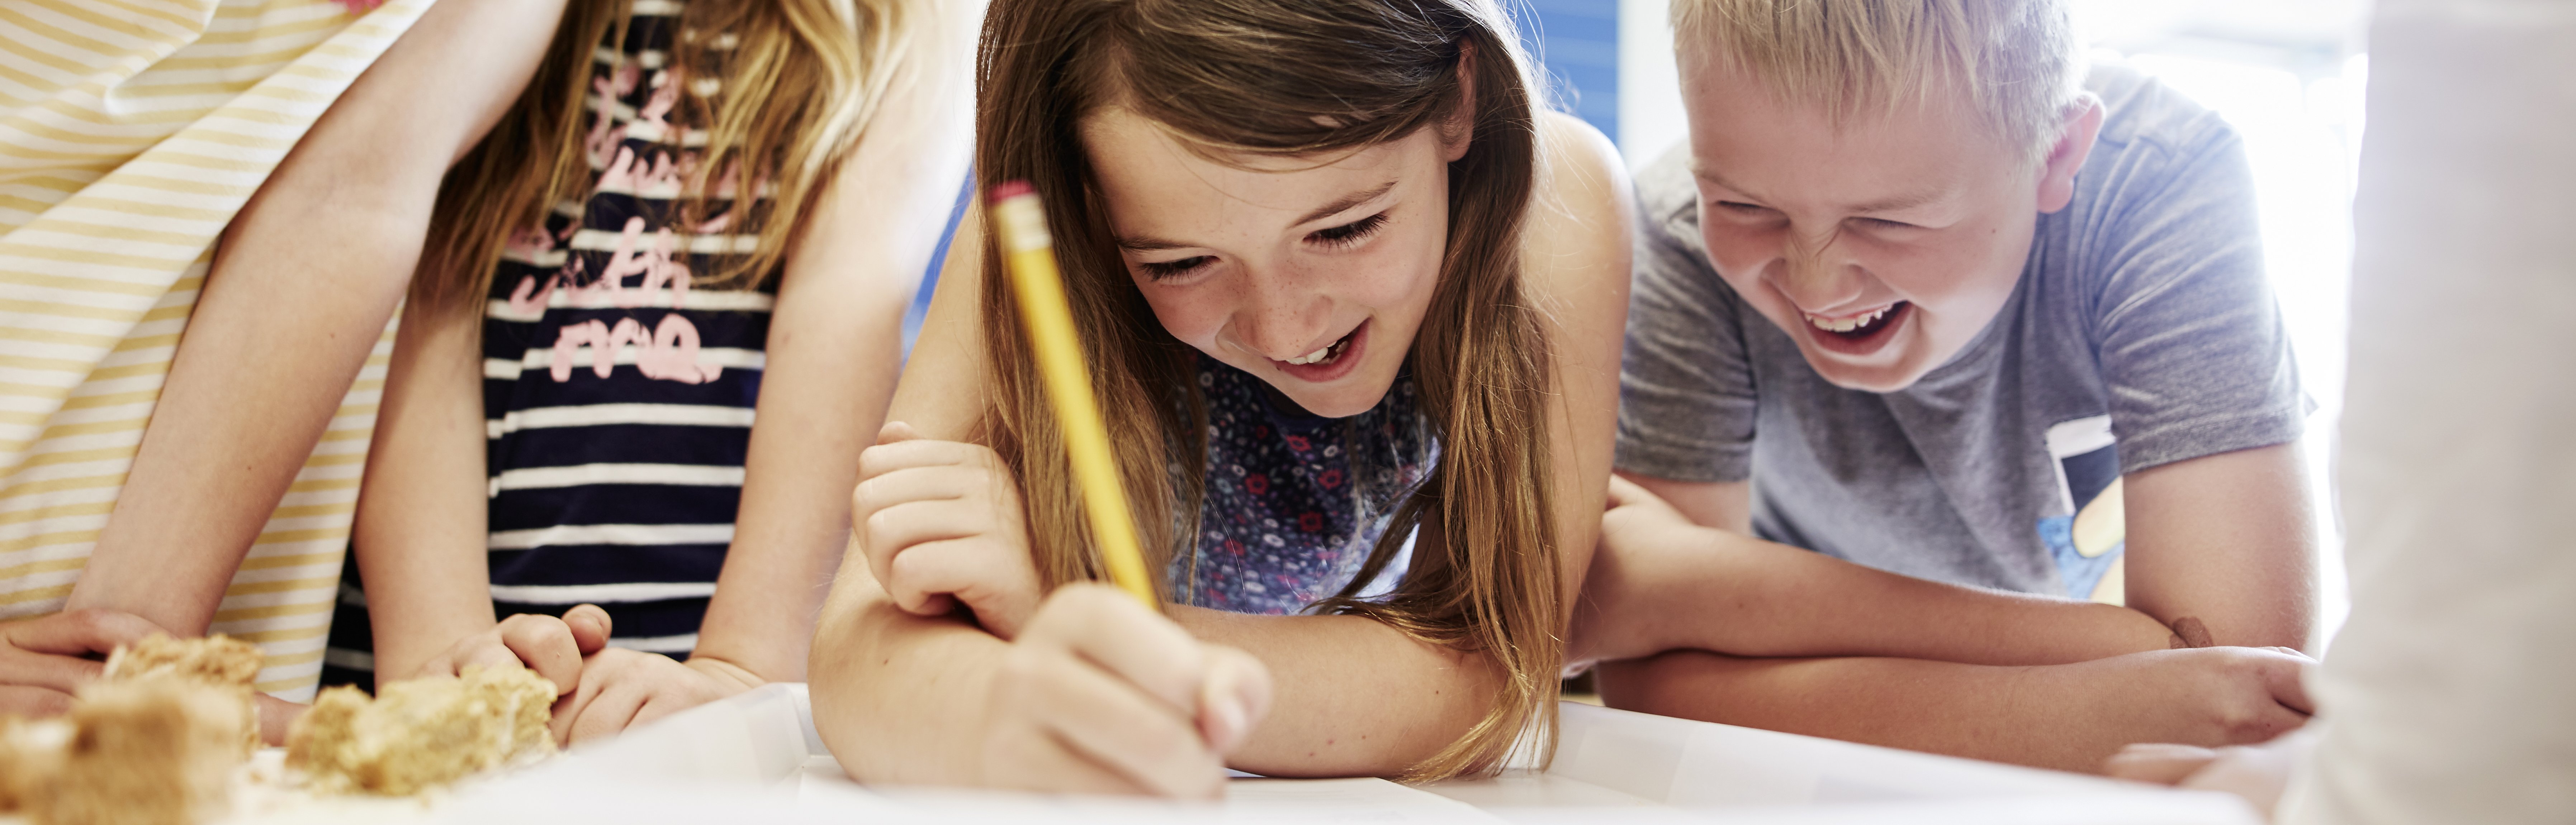 Kinder schauen gemeinsam auf ein Blatt Papier. Ein Mädchen schreibt gerade, ein Junge lacht.